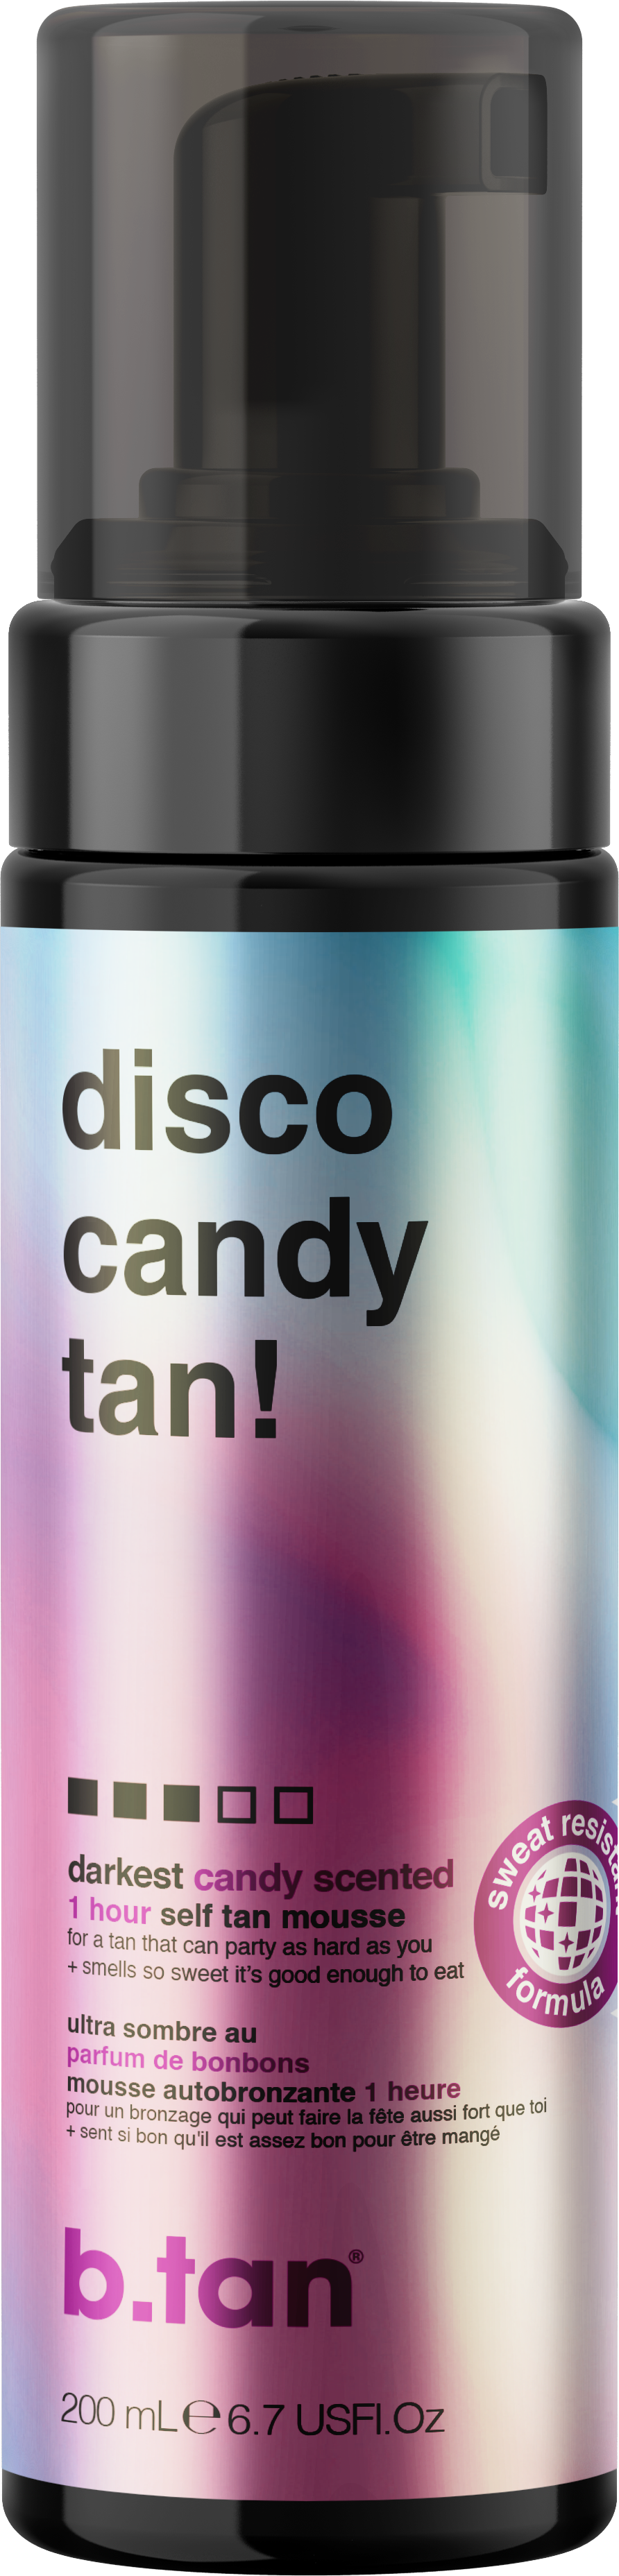 BTAN disco candy tan - self tan mousse